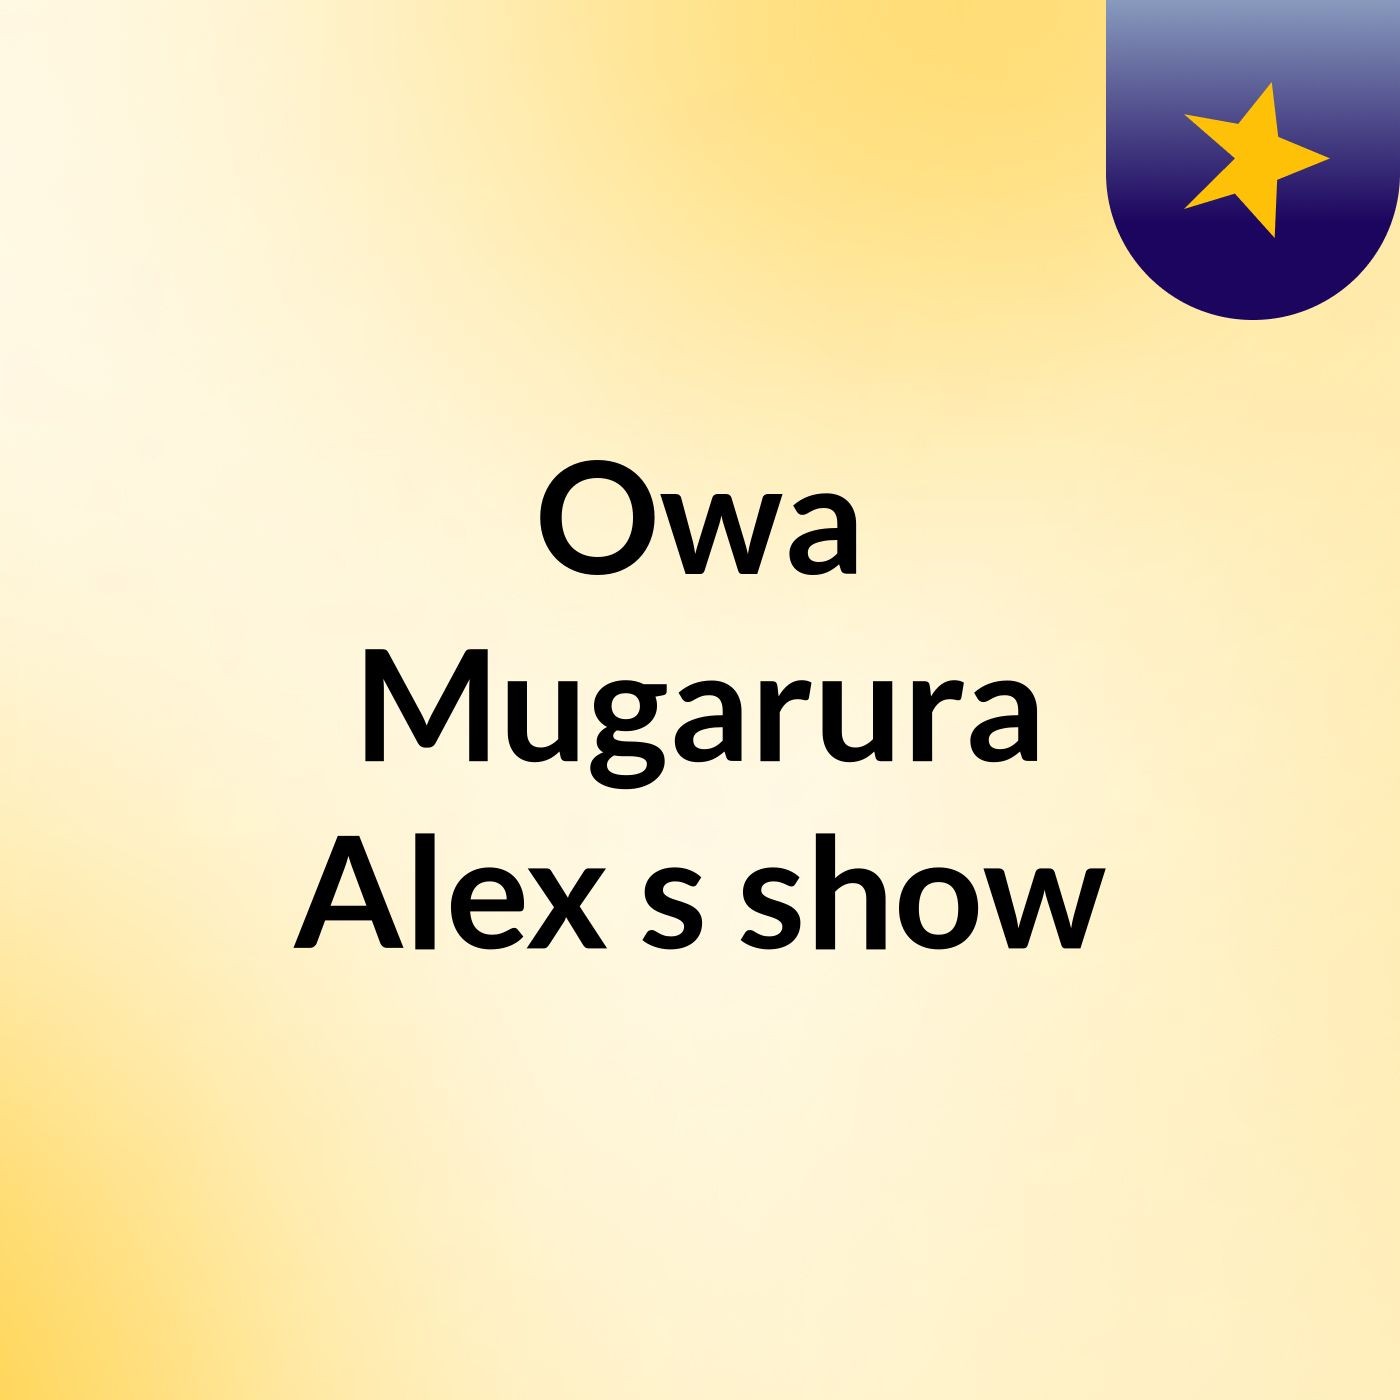 Owa Mugarura Alex's show